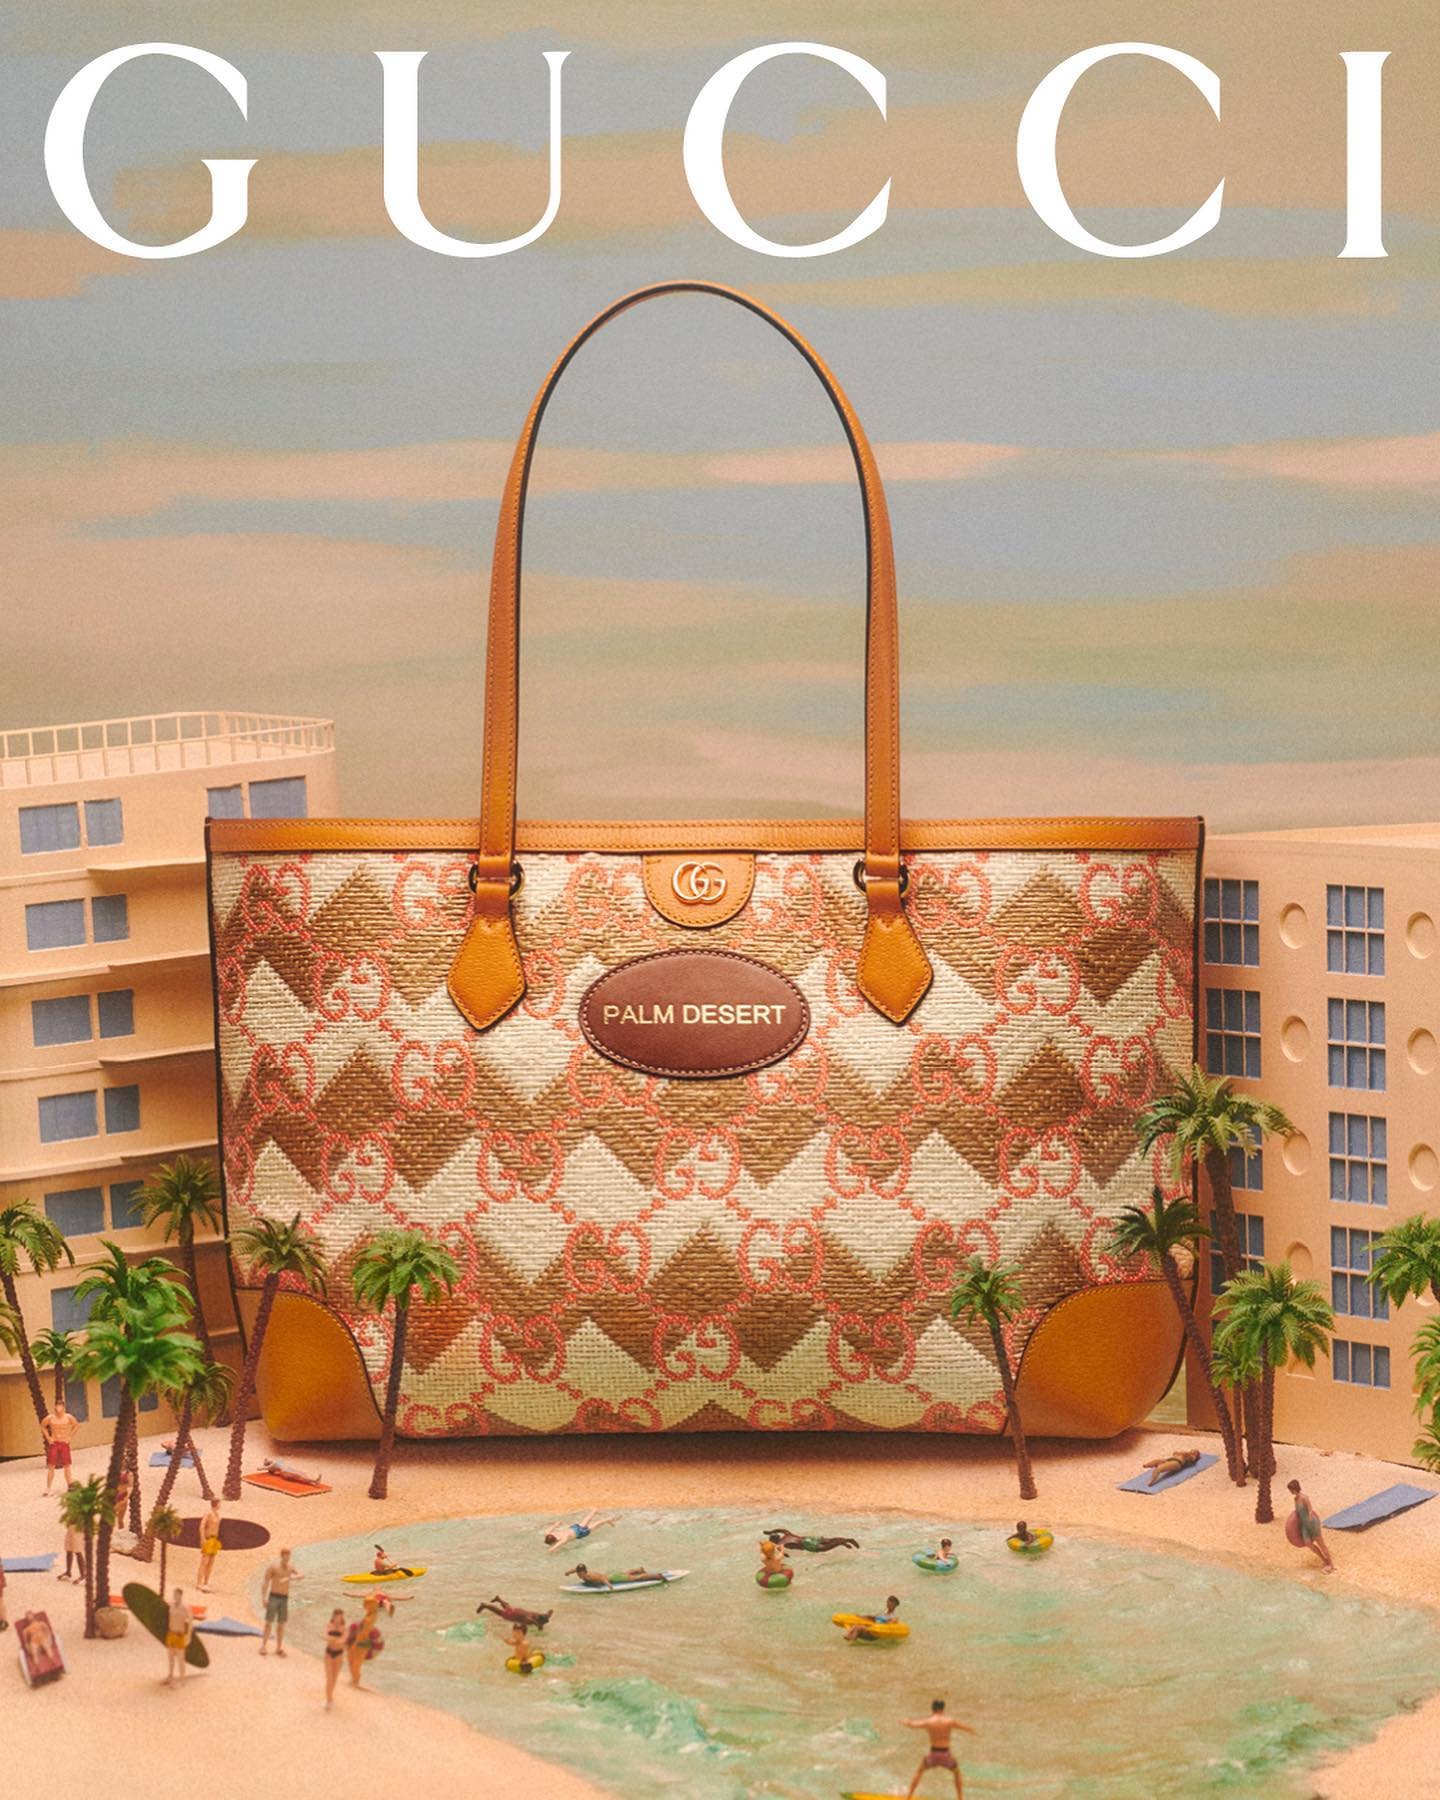 Gucci-Resort-2022-by-Max-Siedentopf (1).jpg